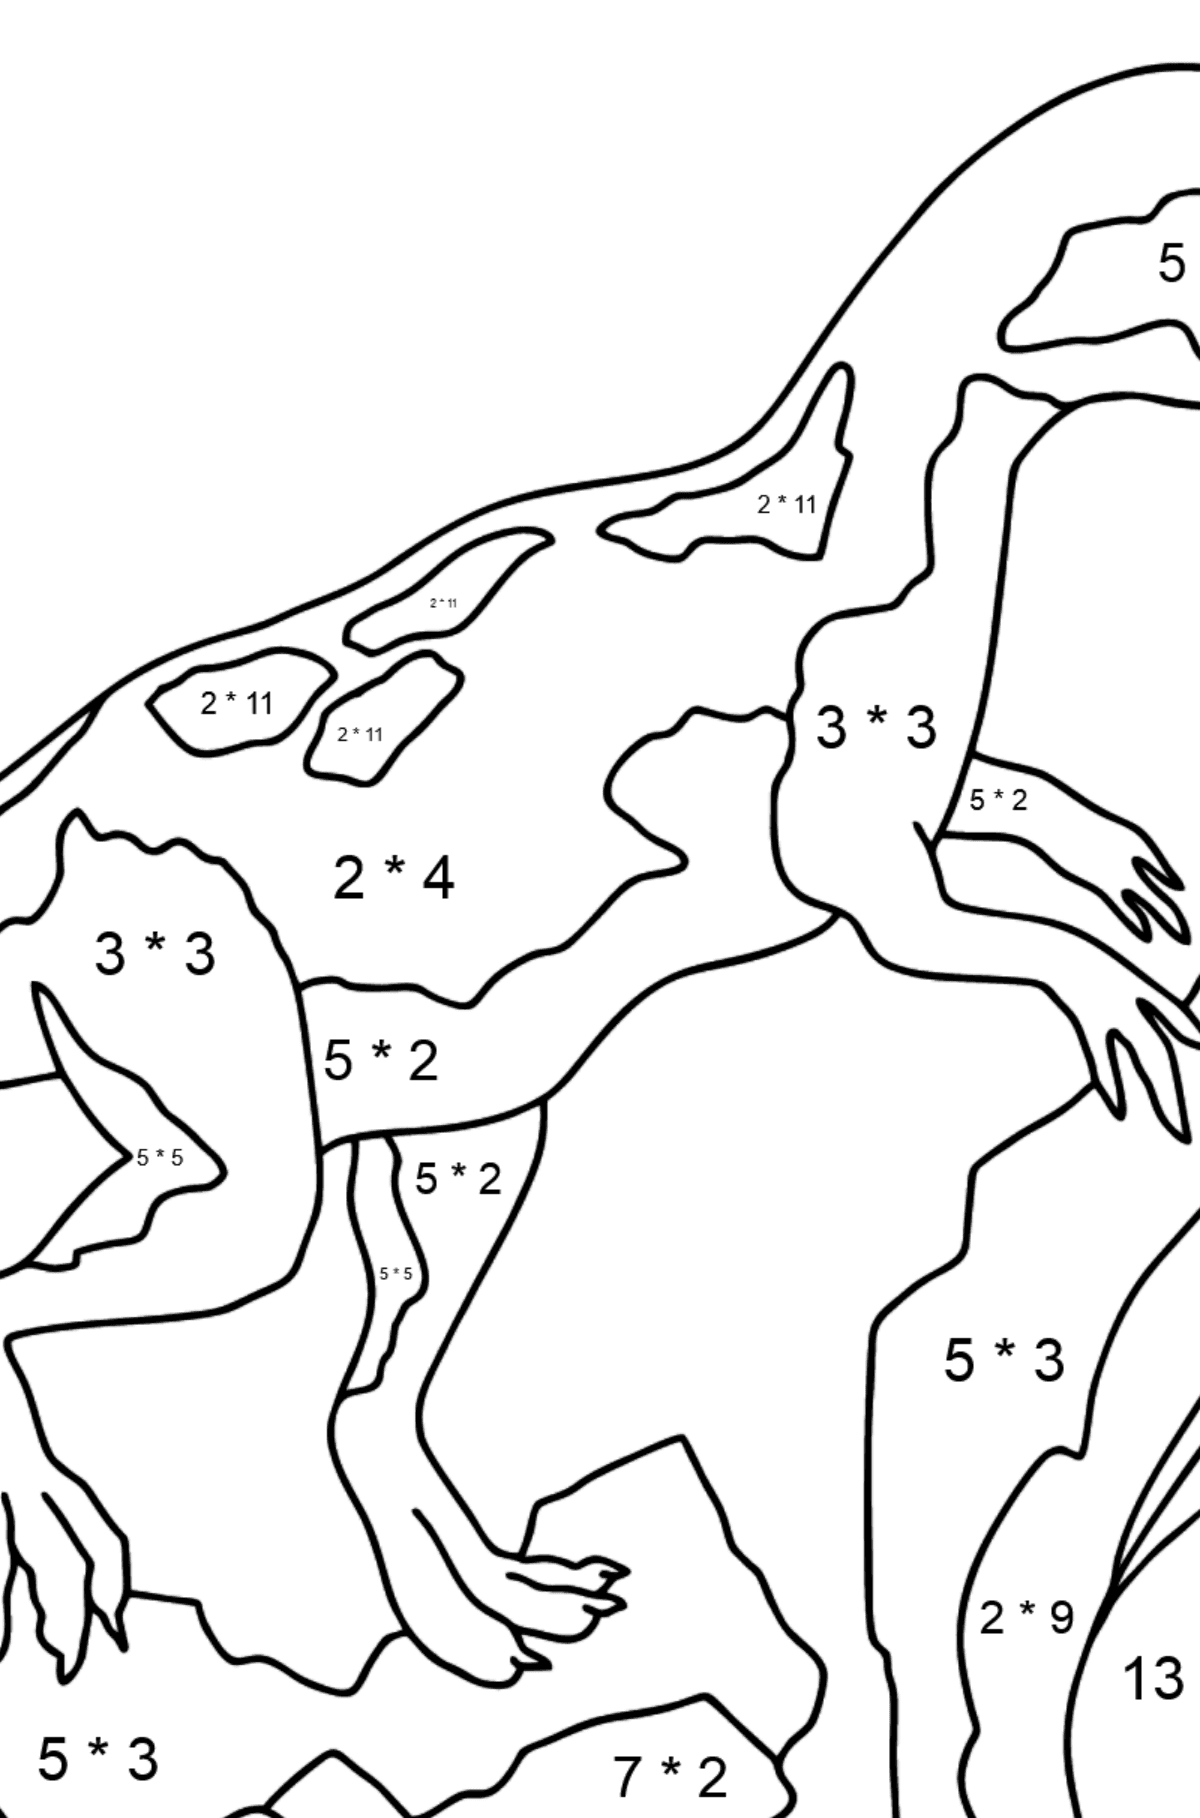 Desenho para colorir de Dinossauro Jurássico (difícil) - Colorindo com Matemática - Multiplicação para Crianças